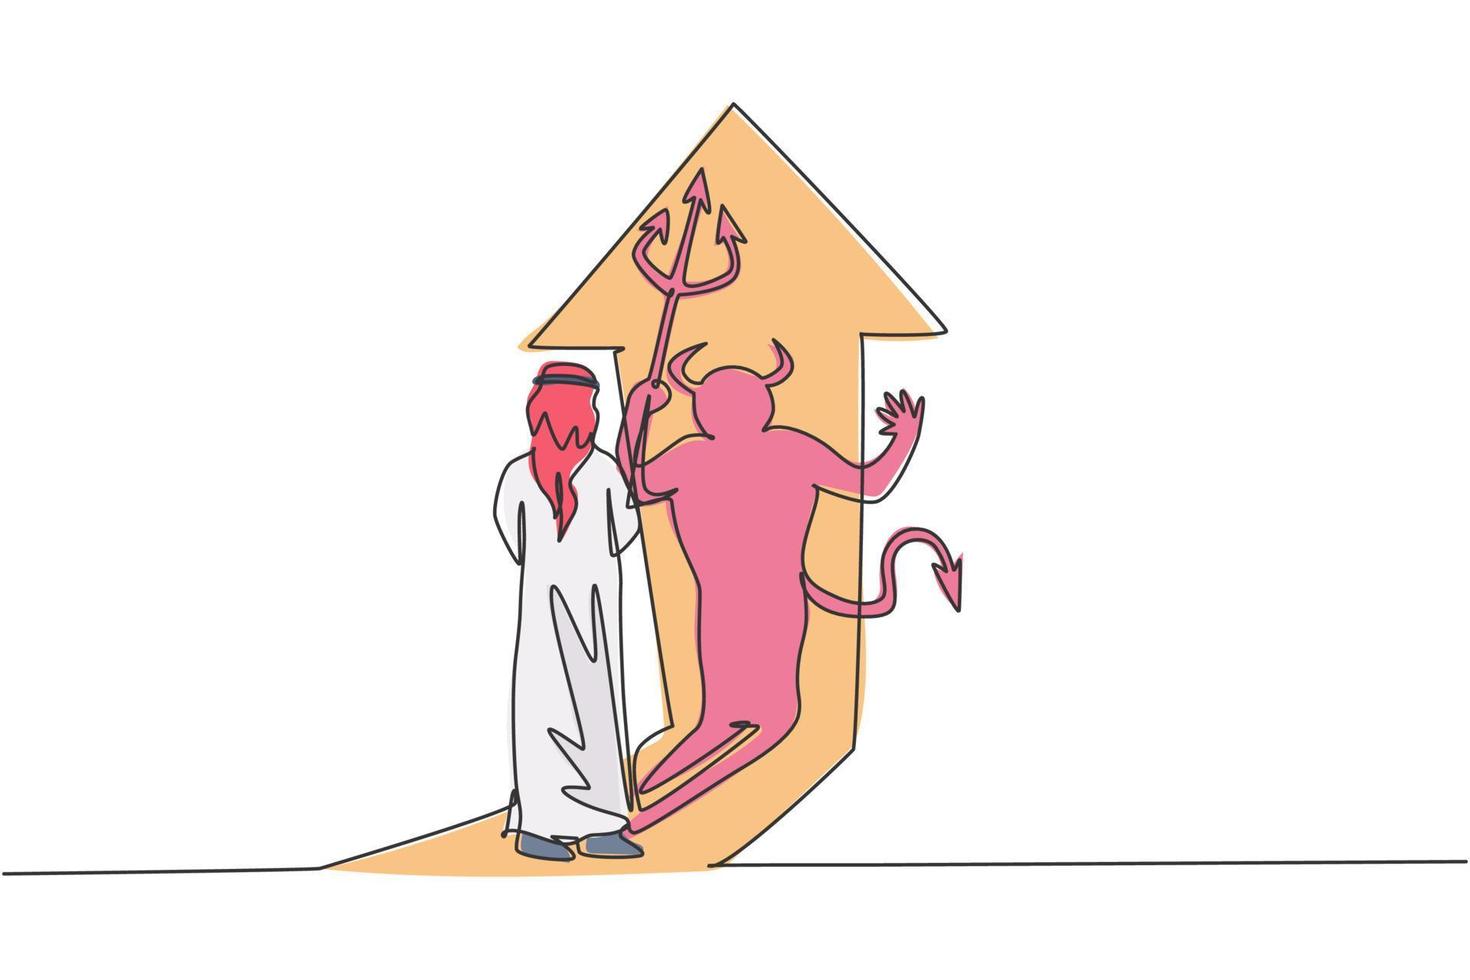 dibujo de una sola línea del joven empresario árabe frente a su aterradora sombra de diablo en la pared. concepto mínimo oculto del carácter humano malo. Ilustración de vector gráfico de diseño de dibujo de línea continua moderna